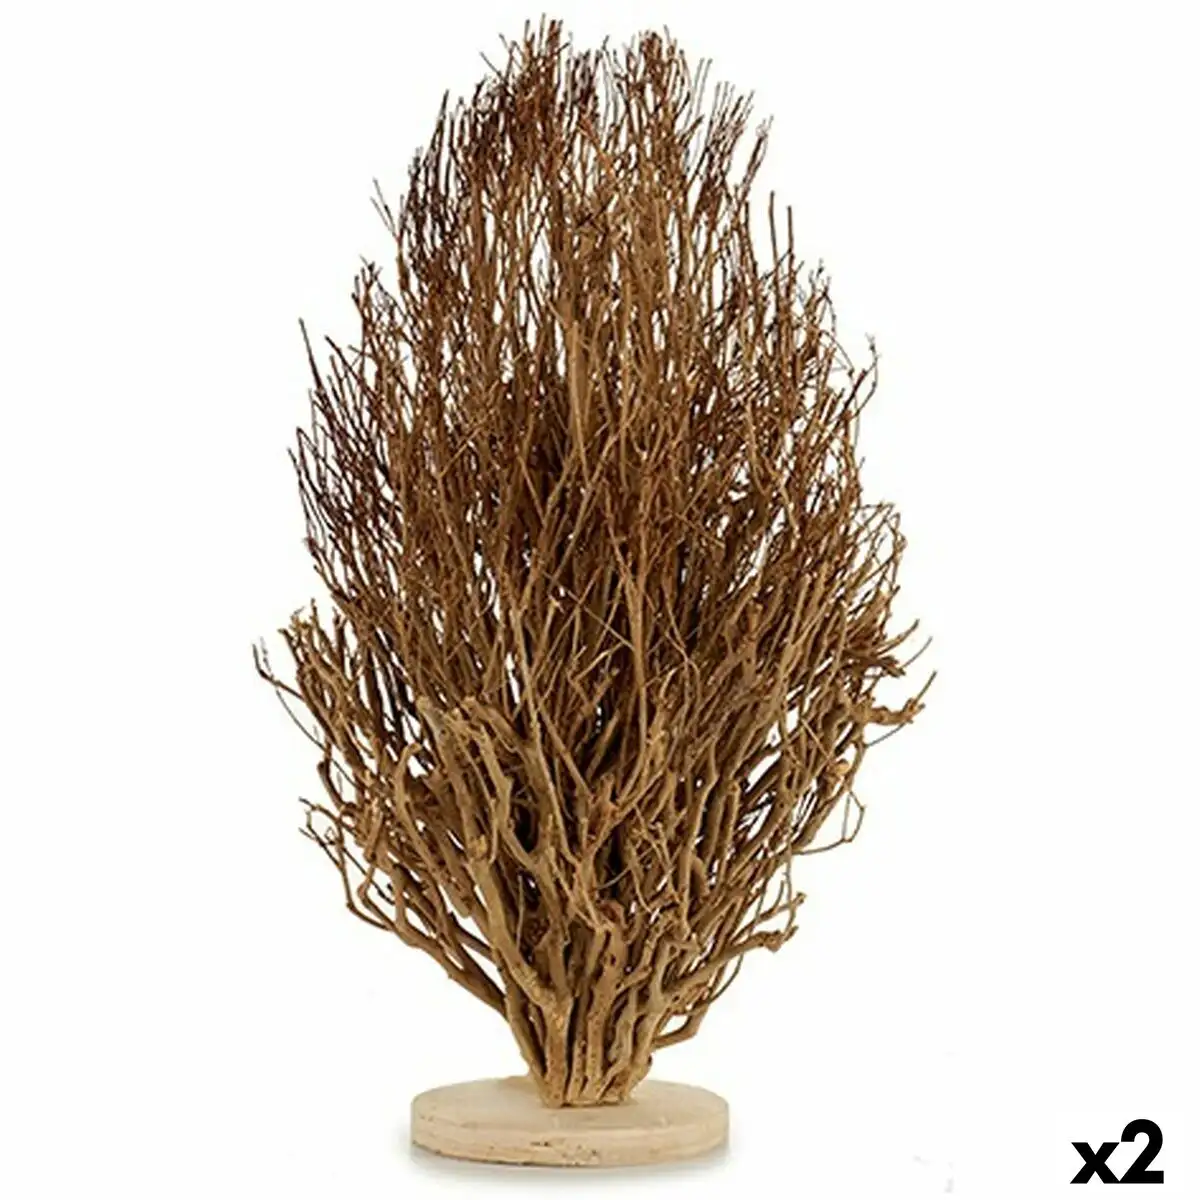 Figurine decorative arbre bois marron 35 x 65 x 35 cm 2 unites _9590. DIAYTAR SENEGAL - Votre Portail Vers l'Exclusivité. Explorez notre boutique en ligne pour découvrir des produits uniques et raffinés, conçus pour ceux qui recherchent l'excellence.